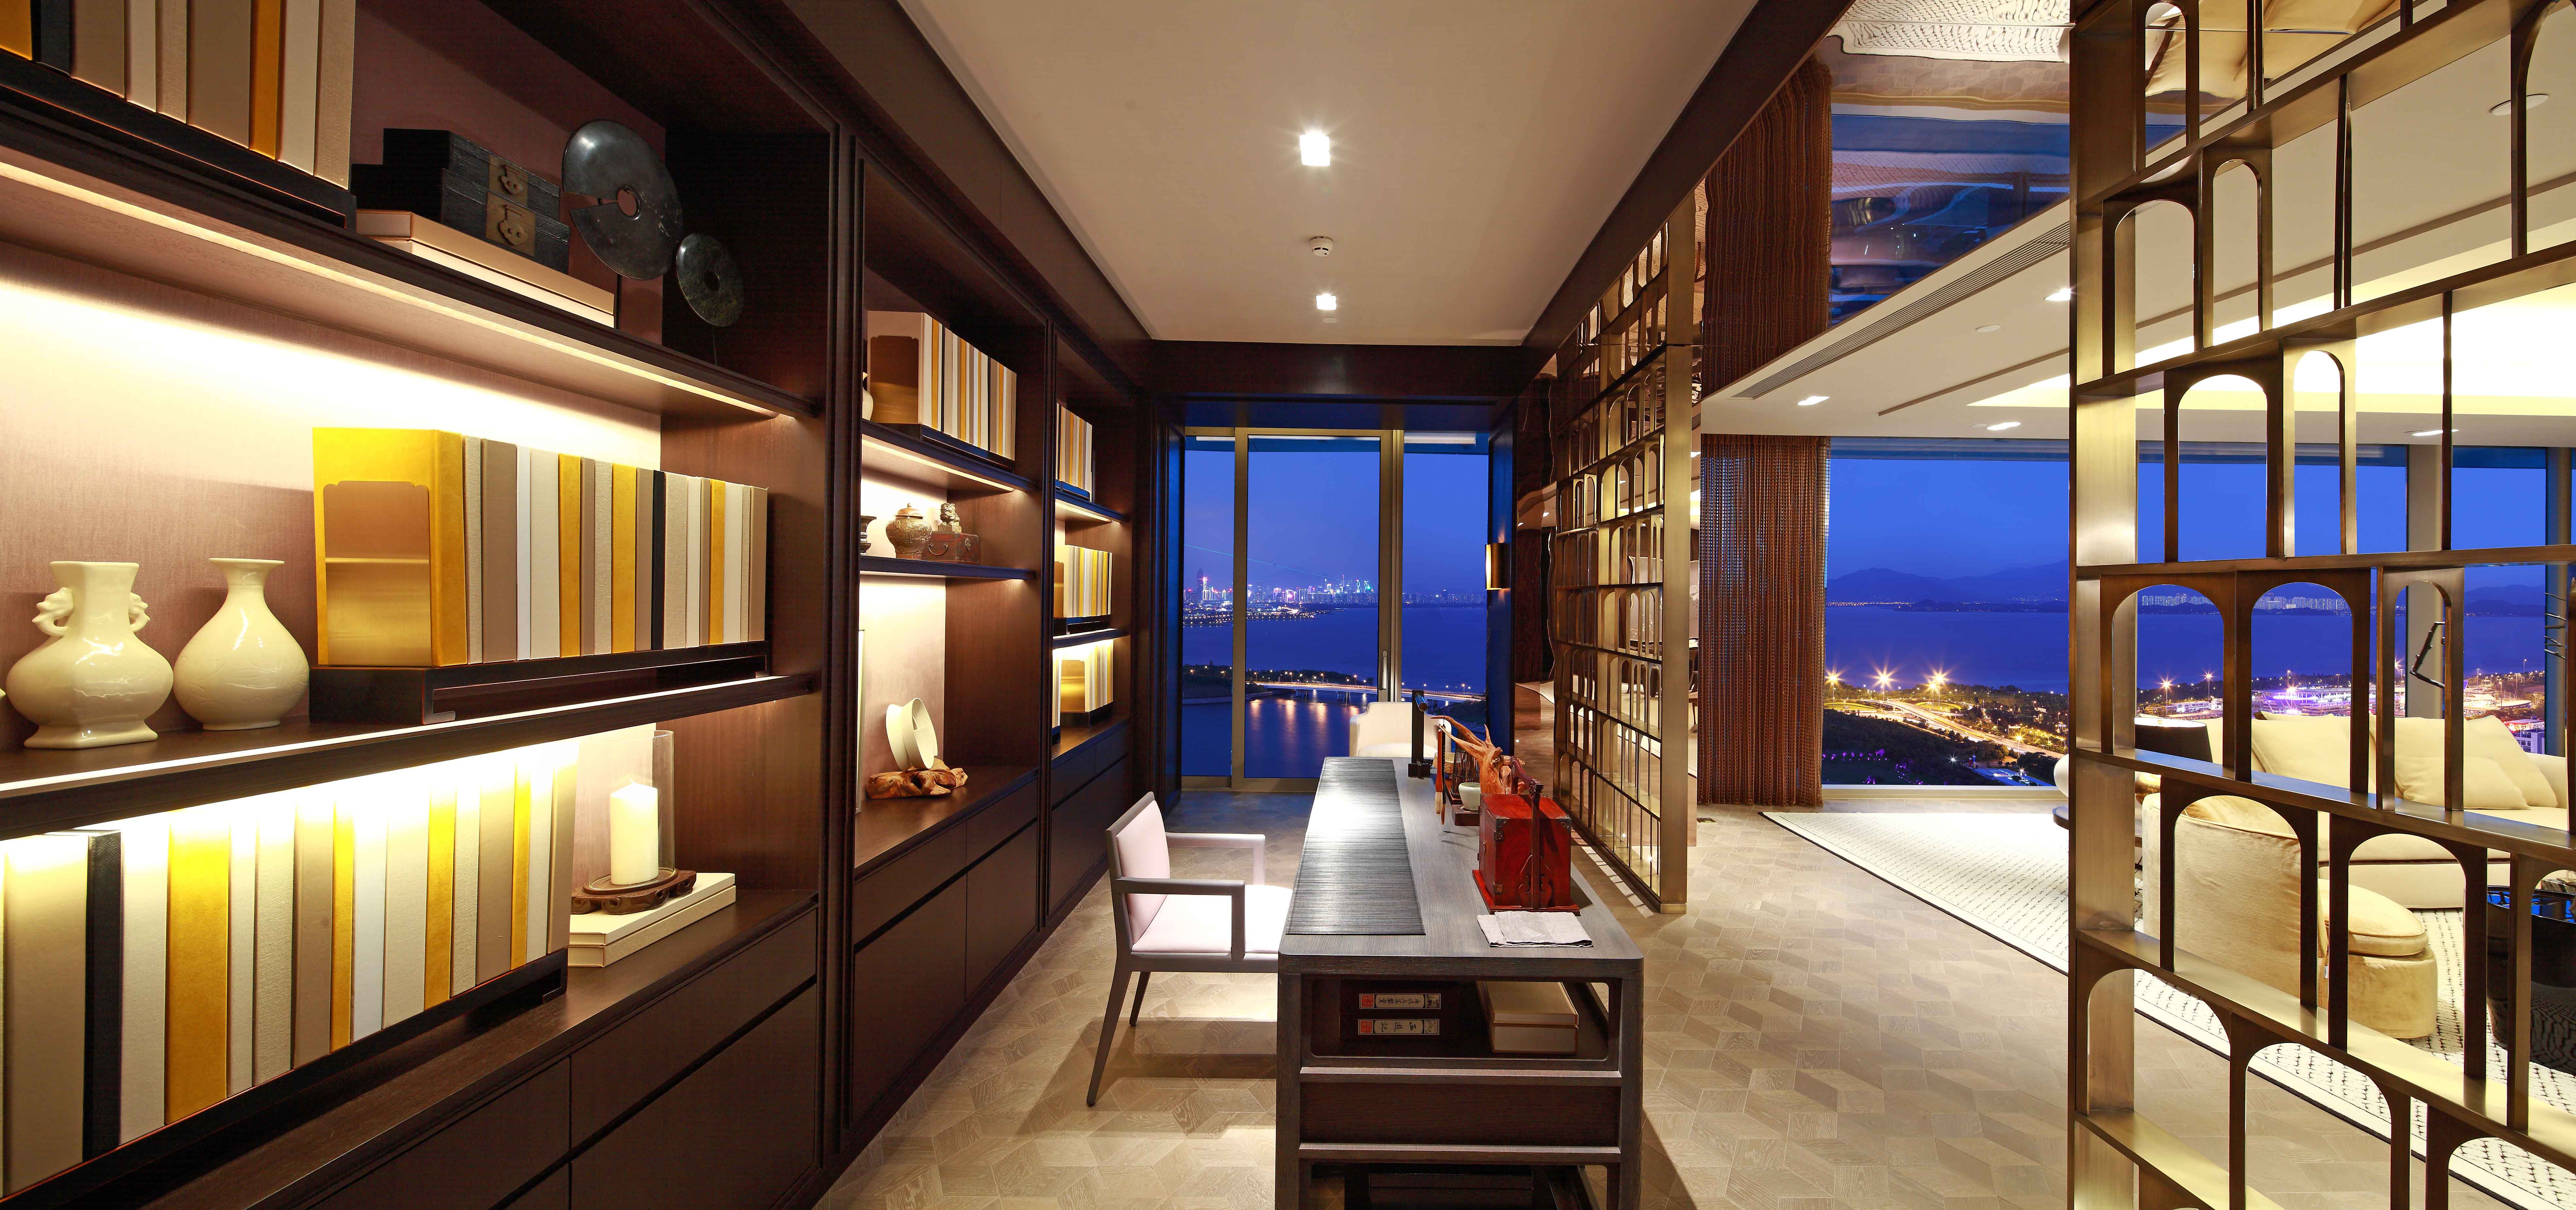 中国のホテルモダンウォーキングワードローブデザイン木製ドア家具セット